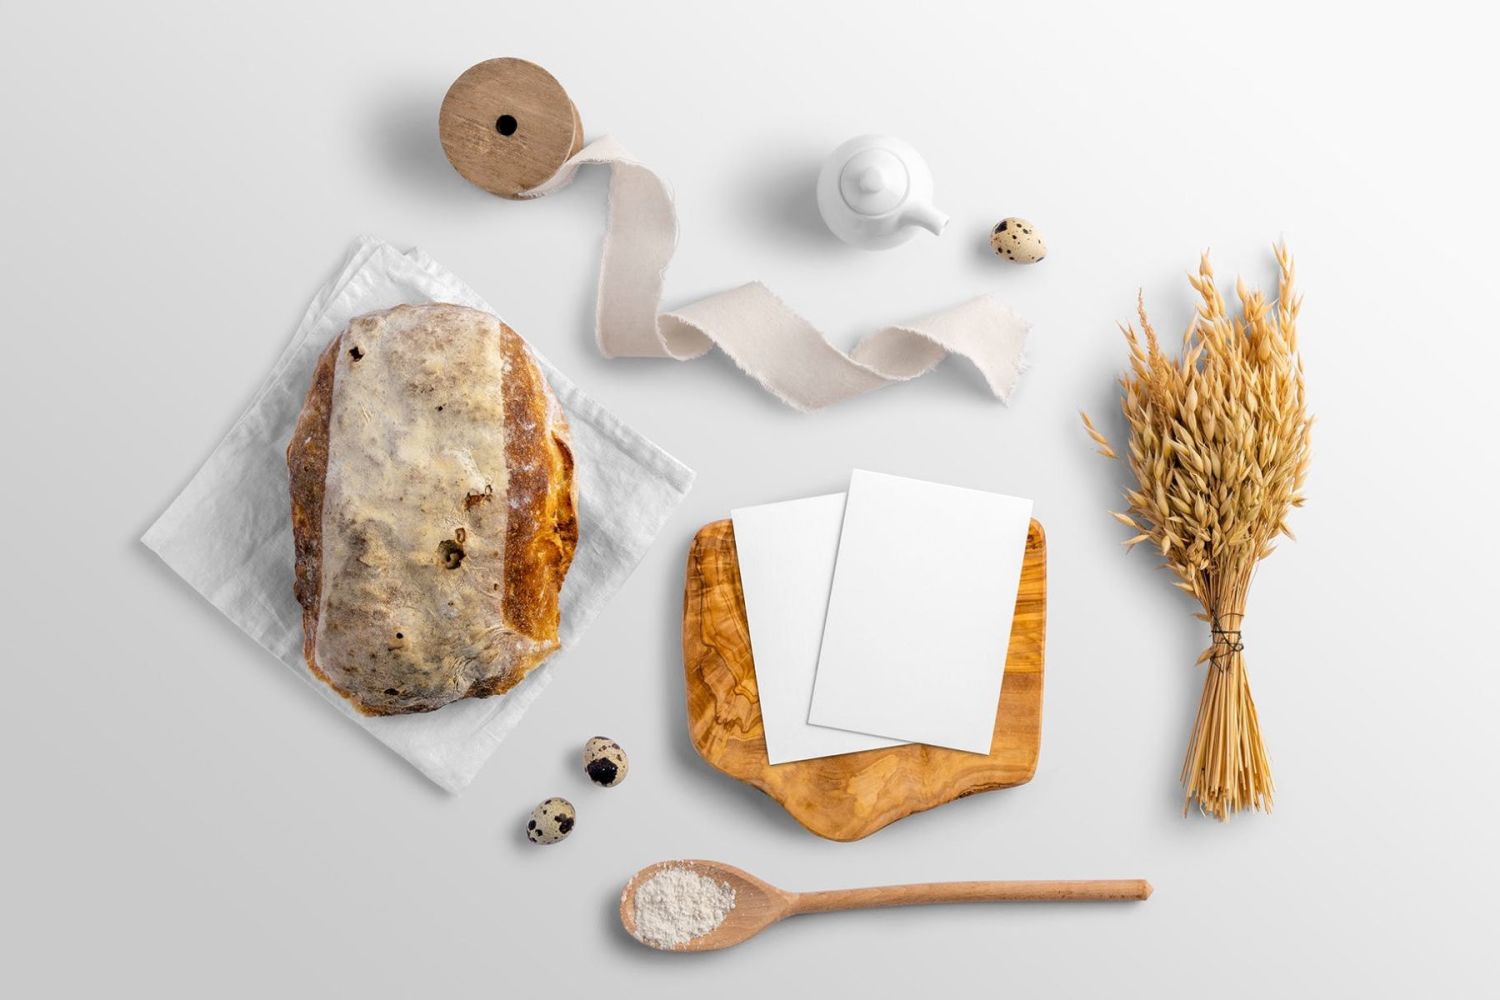 面包店品牌样机套件 Bakery Branding Mockup Kit插图29